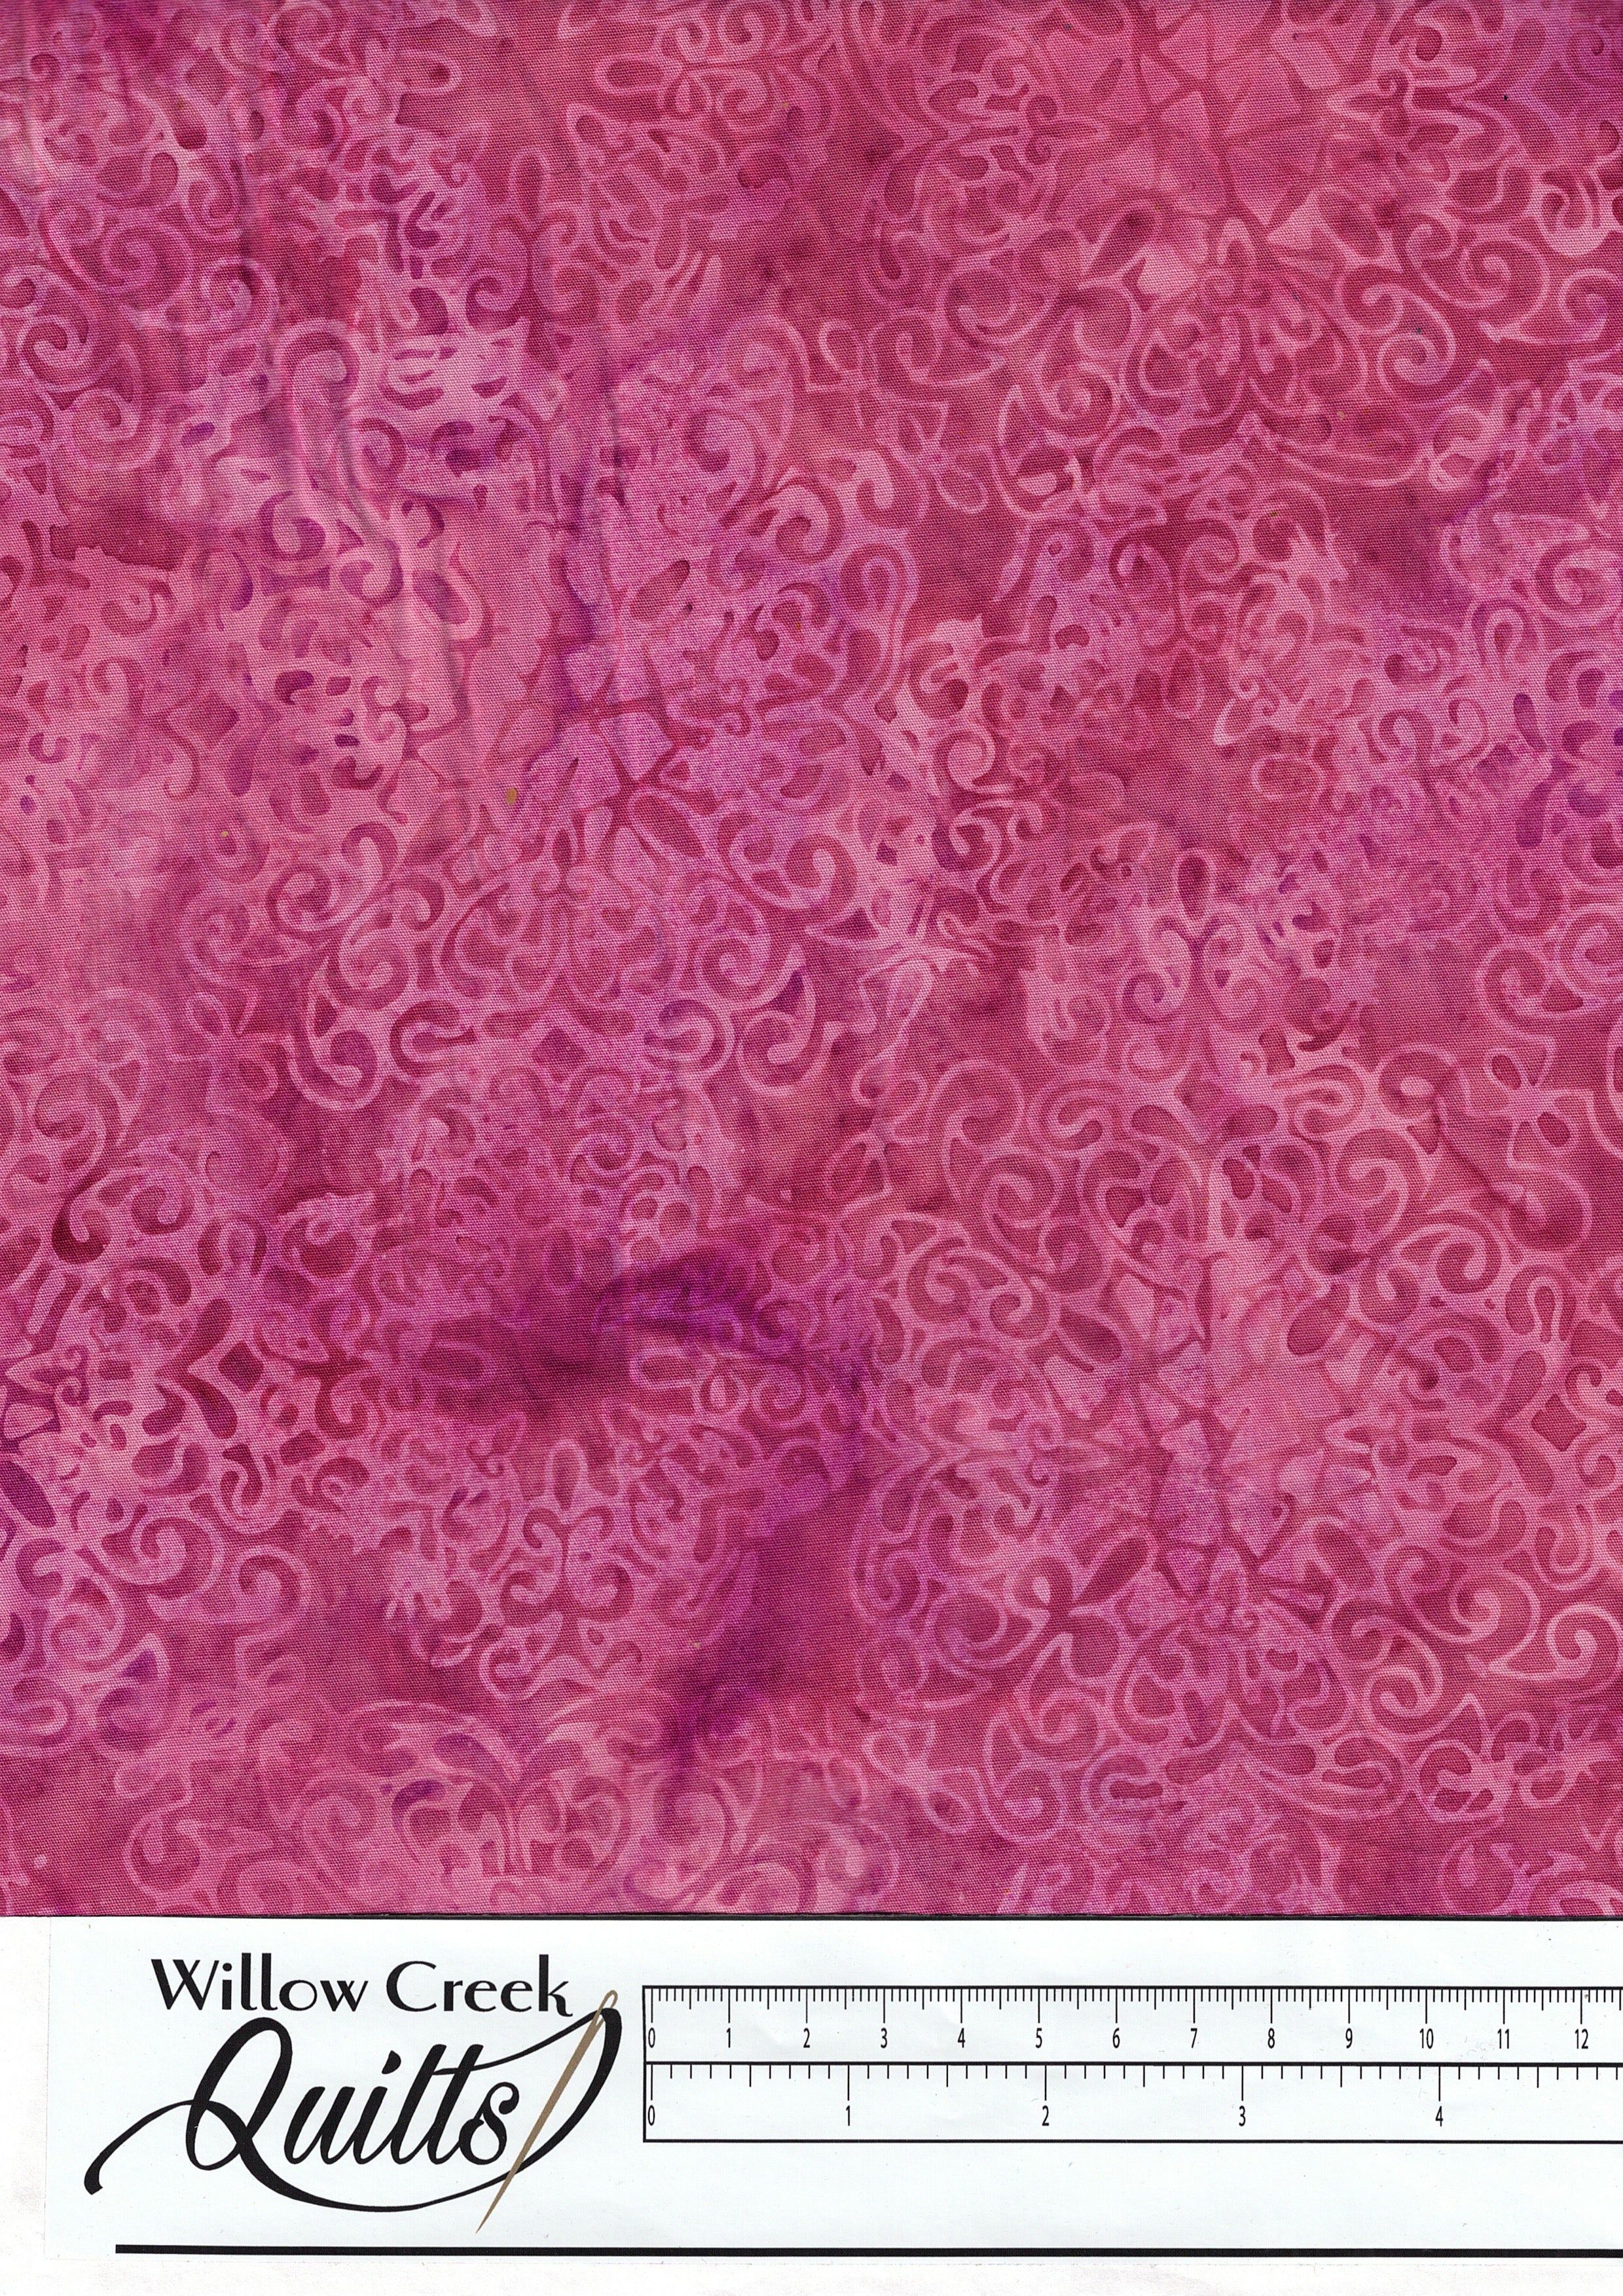 Vintage Lace Batik - Medallion Lace - Raspberry - 122131330